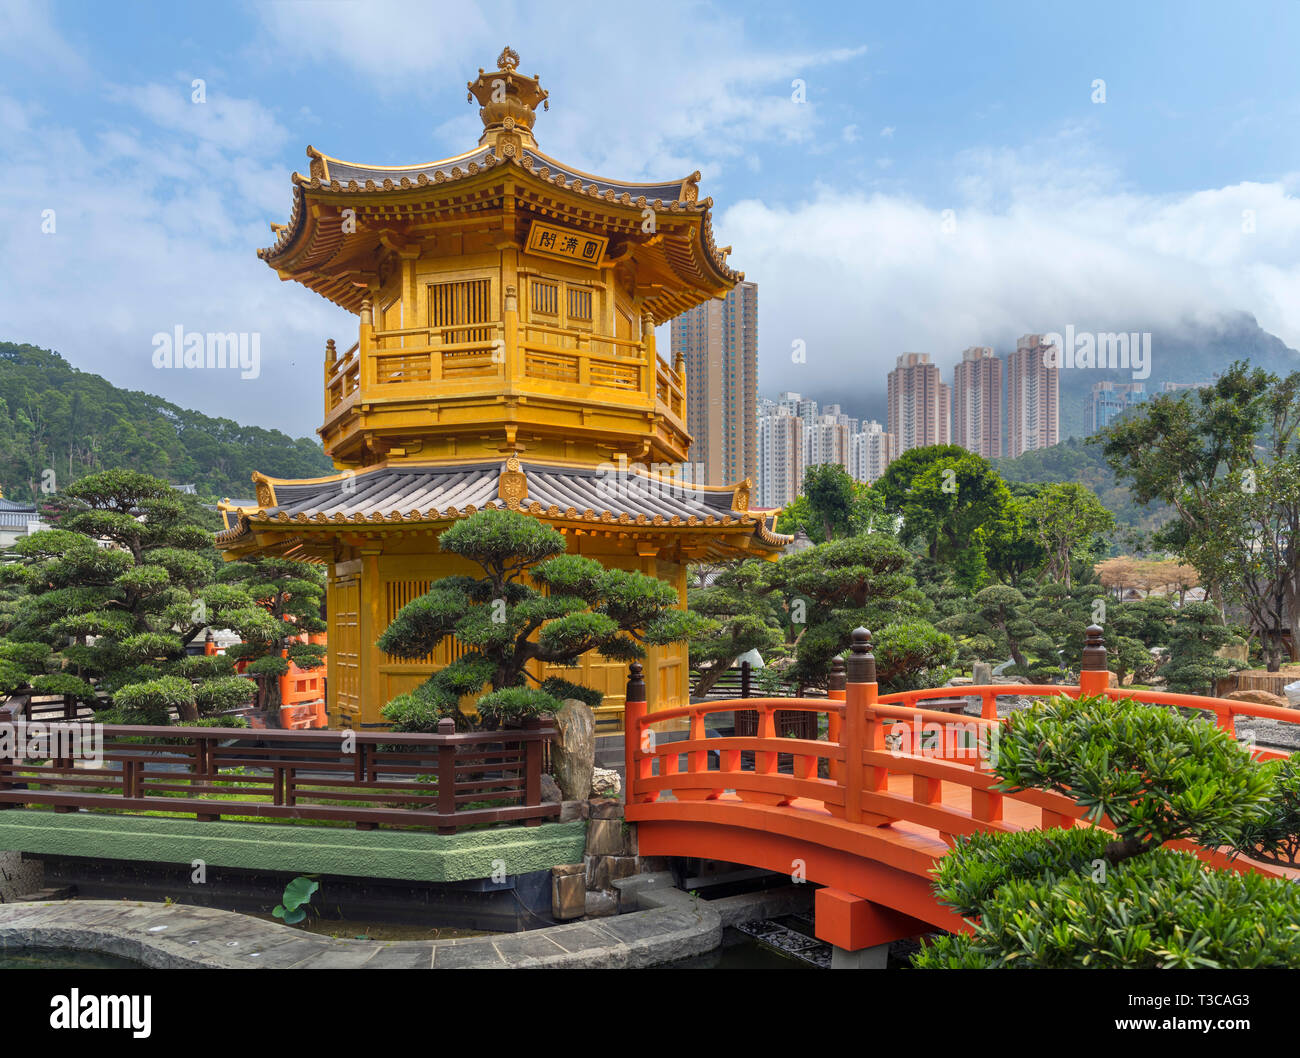 Le pavillon de la perfection absolue dans Nan Lian Garden, une partie de la Chi Lin Nunnery, complexe Diamond Hill, Kowloon, Hong Kong, Chine Banque D'Images